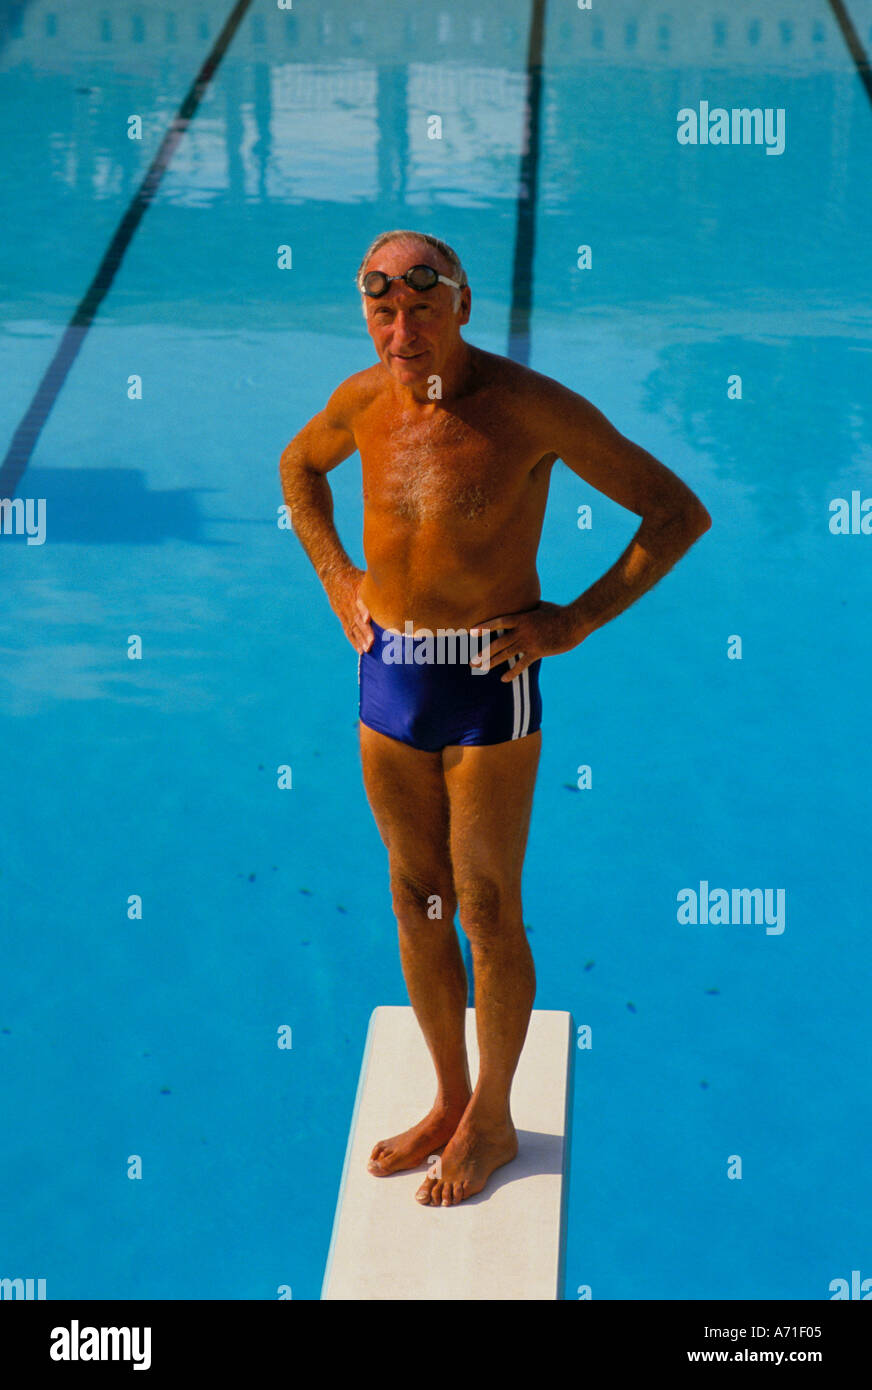 Gebräunt und Fit senior Mann trägt blaue Badehose und ein paar Brillen, stehend auf einem Sprungbrett über einen Swimming pool Stockfoto